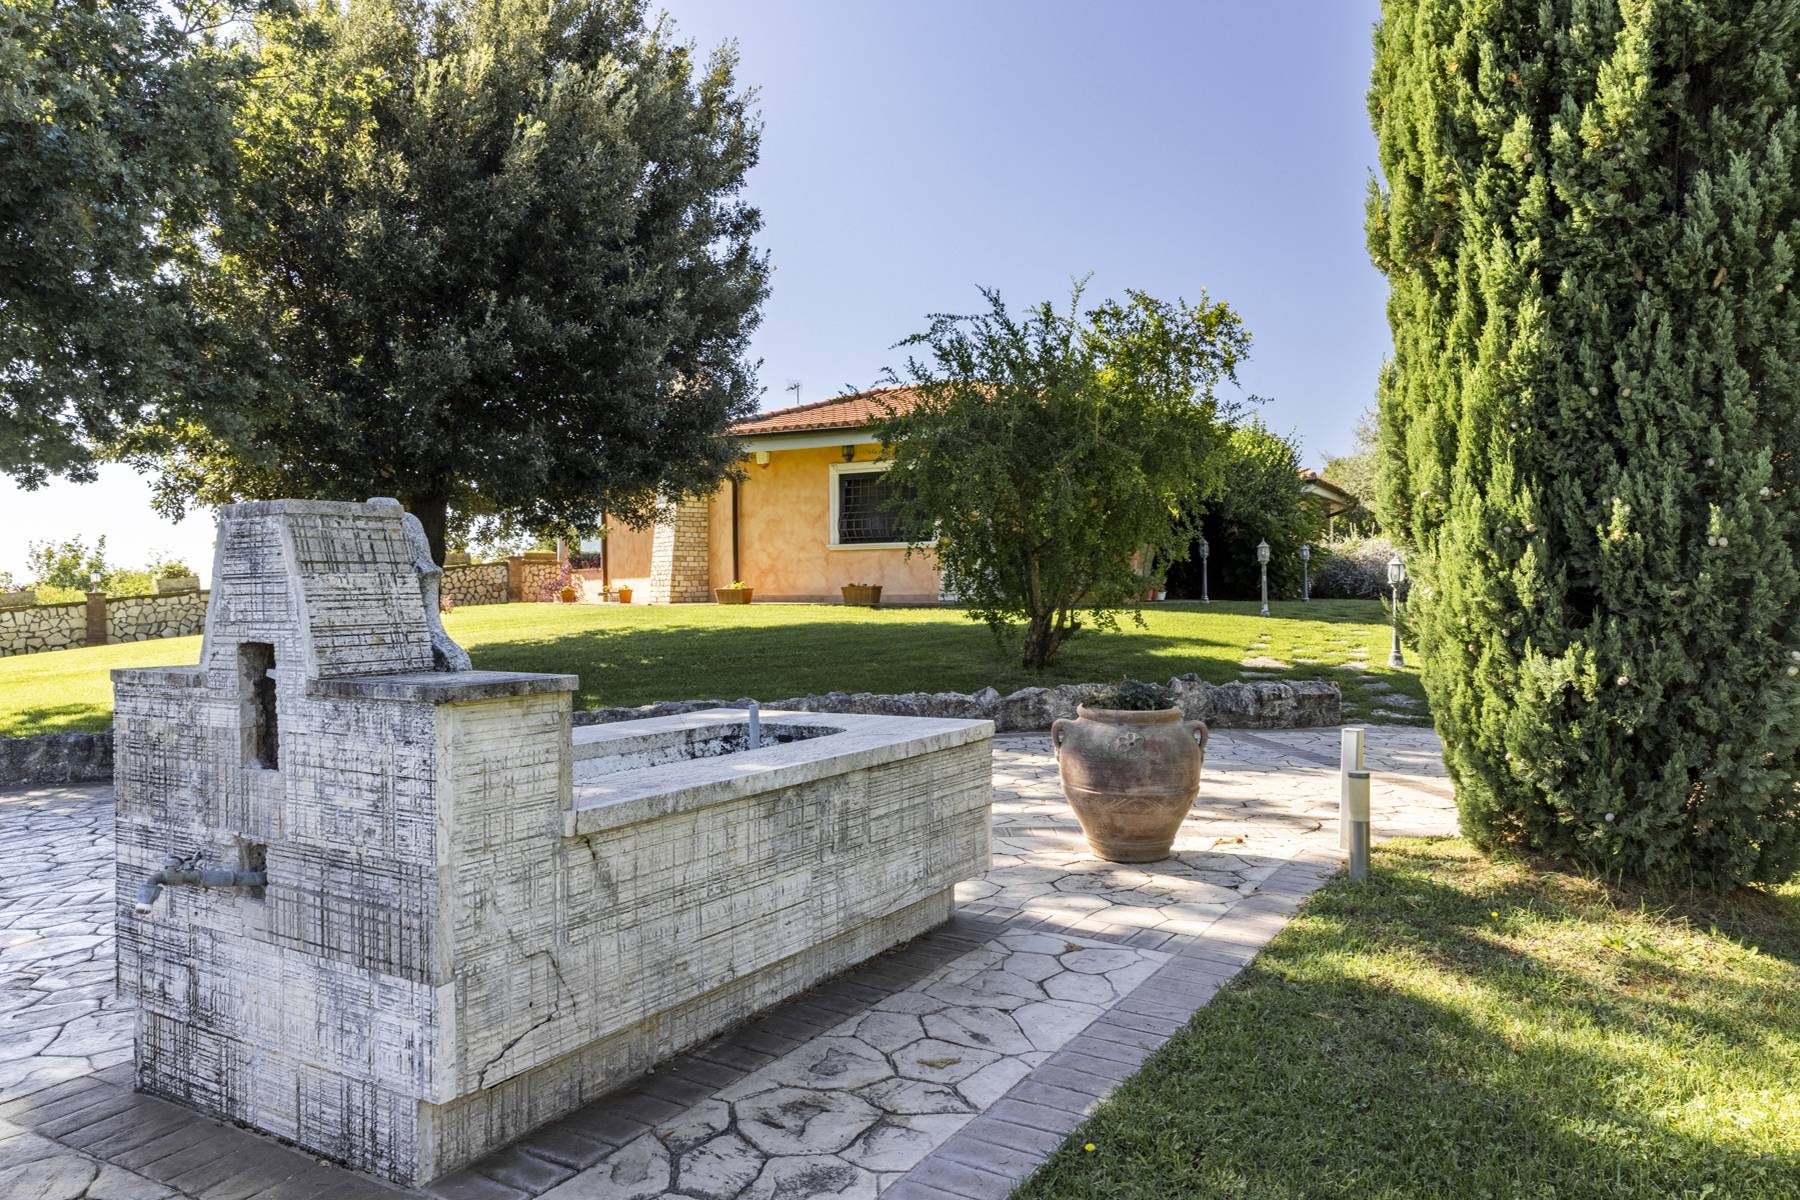 Villa in Vendita a Riano: 5 locali, 500 mq - Foto 4